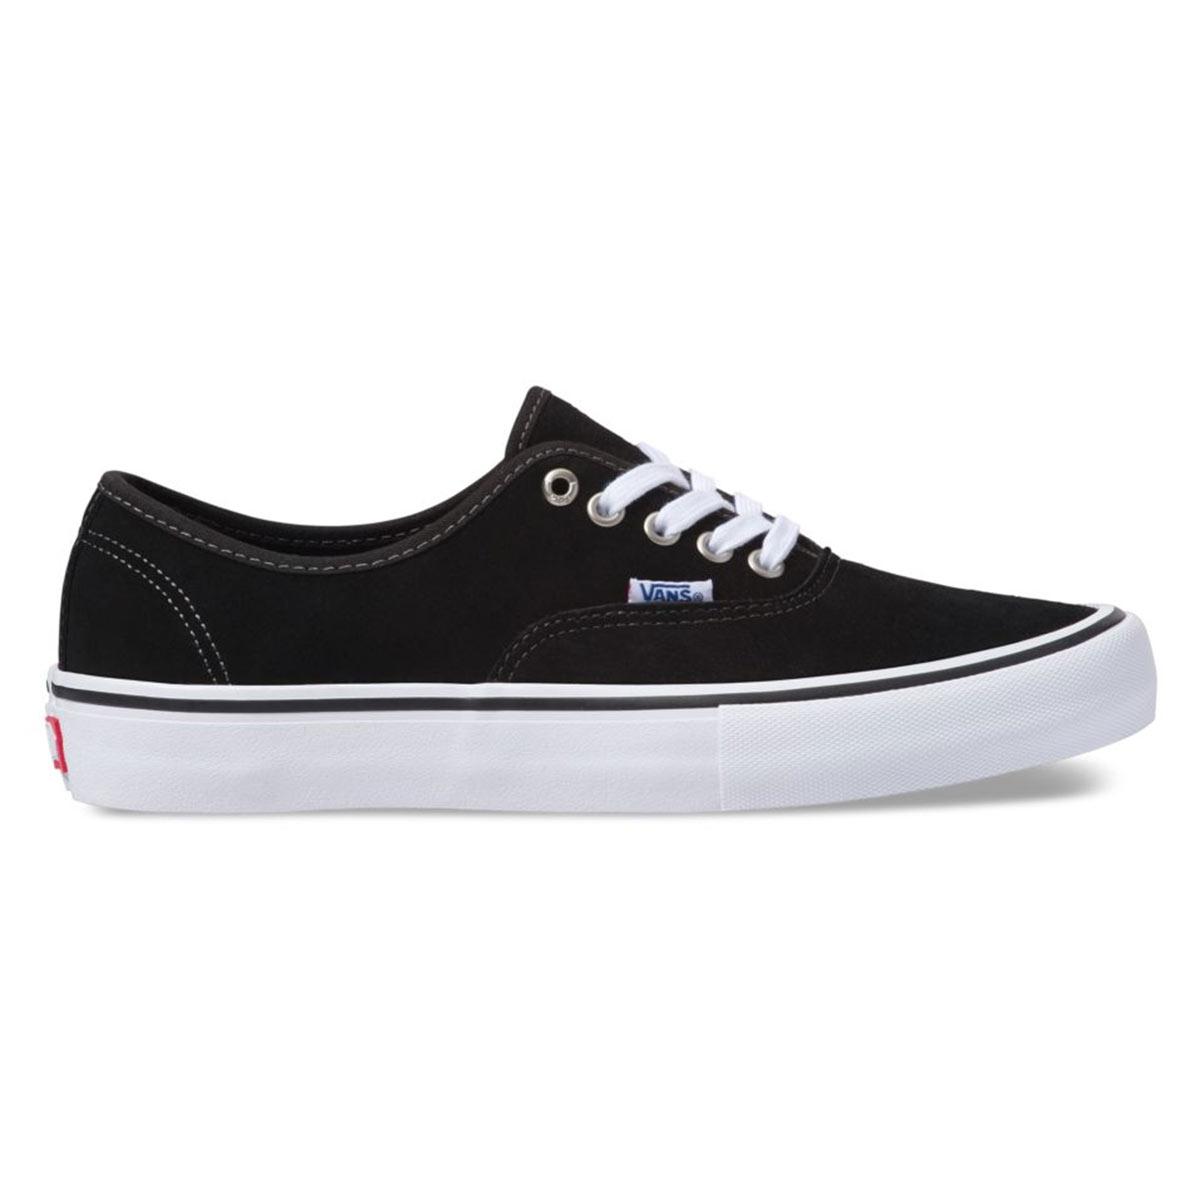 Vans Suede Authentic Pro Skate Shoe, Black